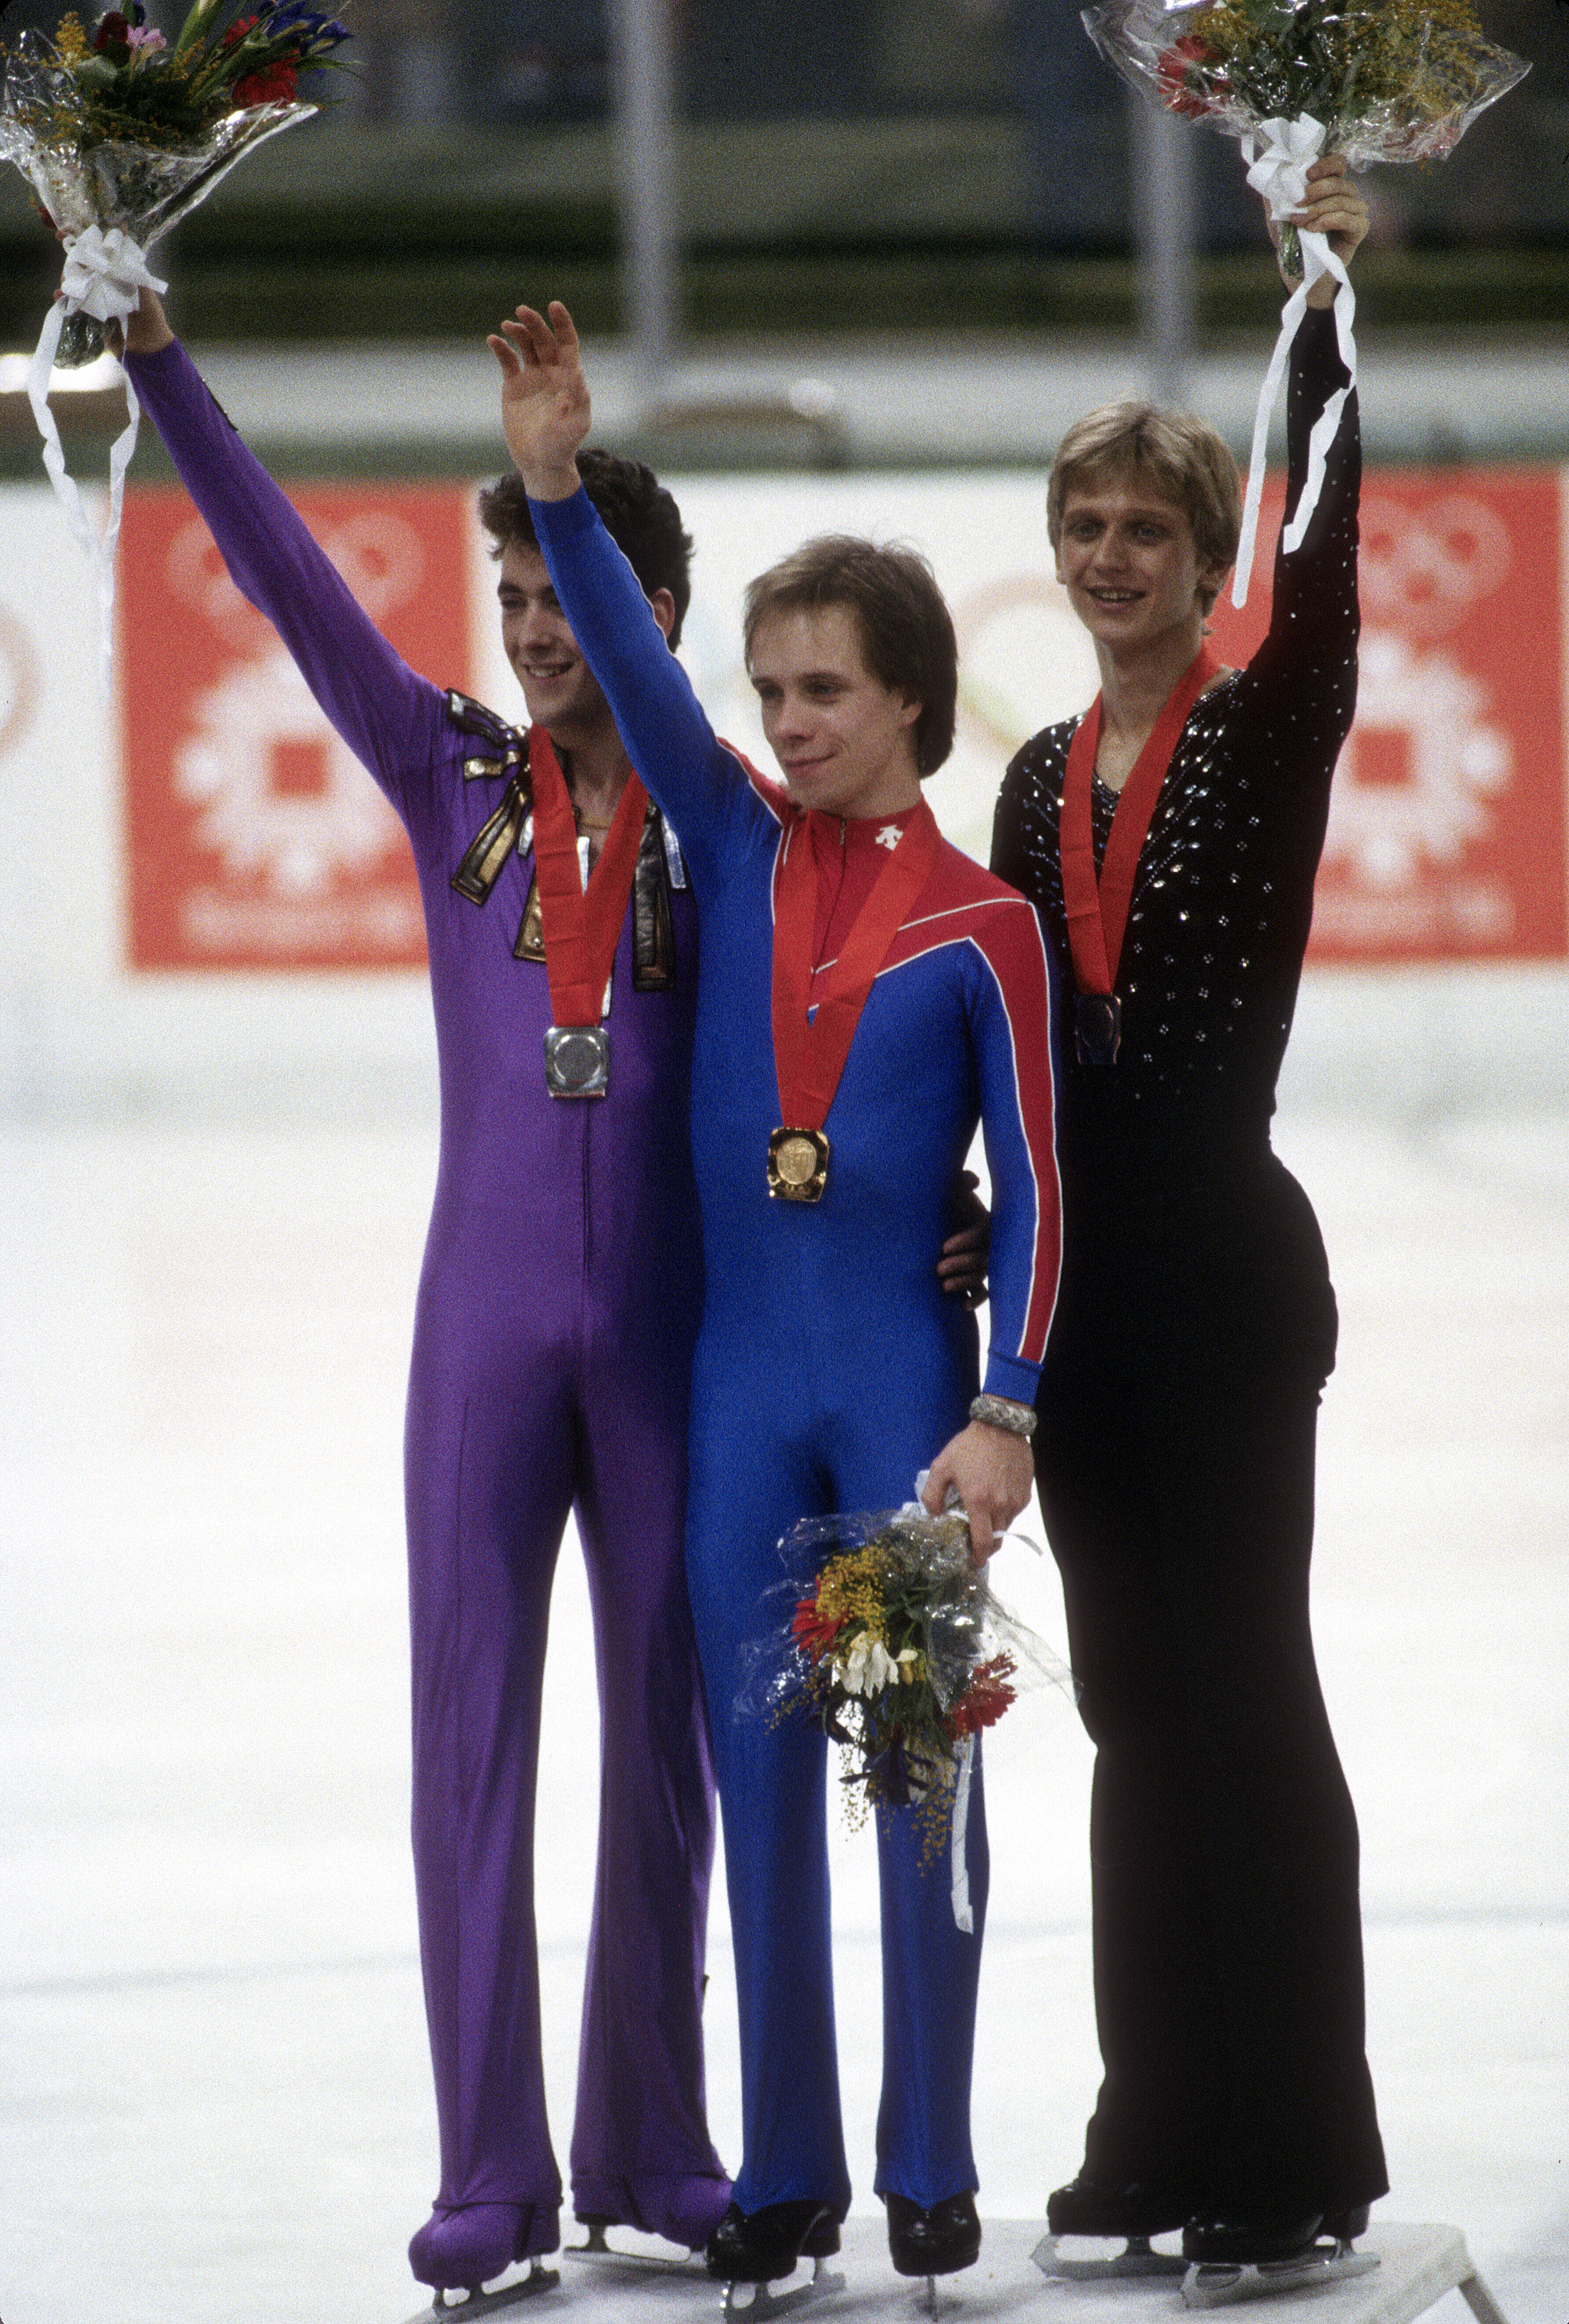 Scott Hamilton pendant la compétition de patinage artistique aux XIVe Jeux olympiques d'hiver, vers 1984 | Source : Getty Images